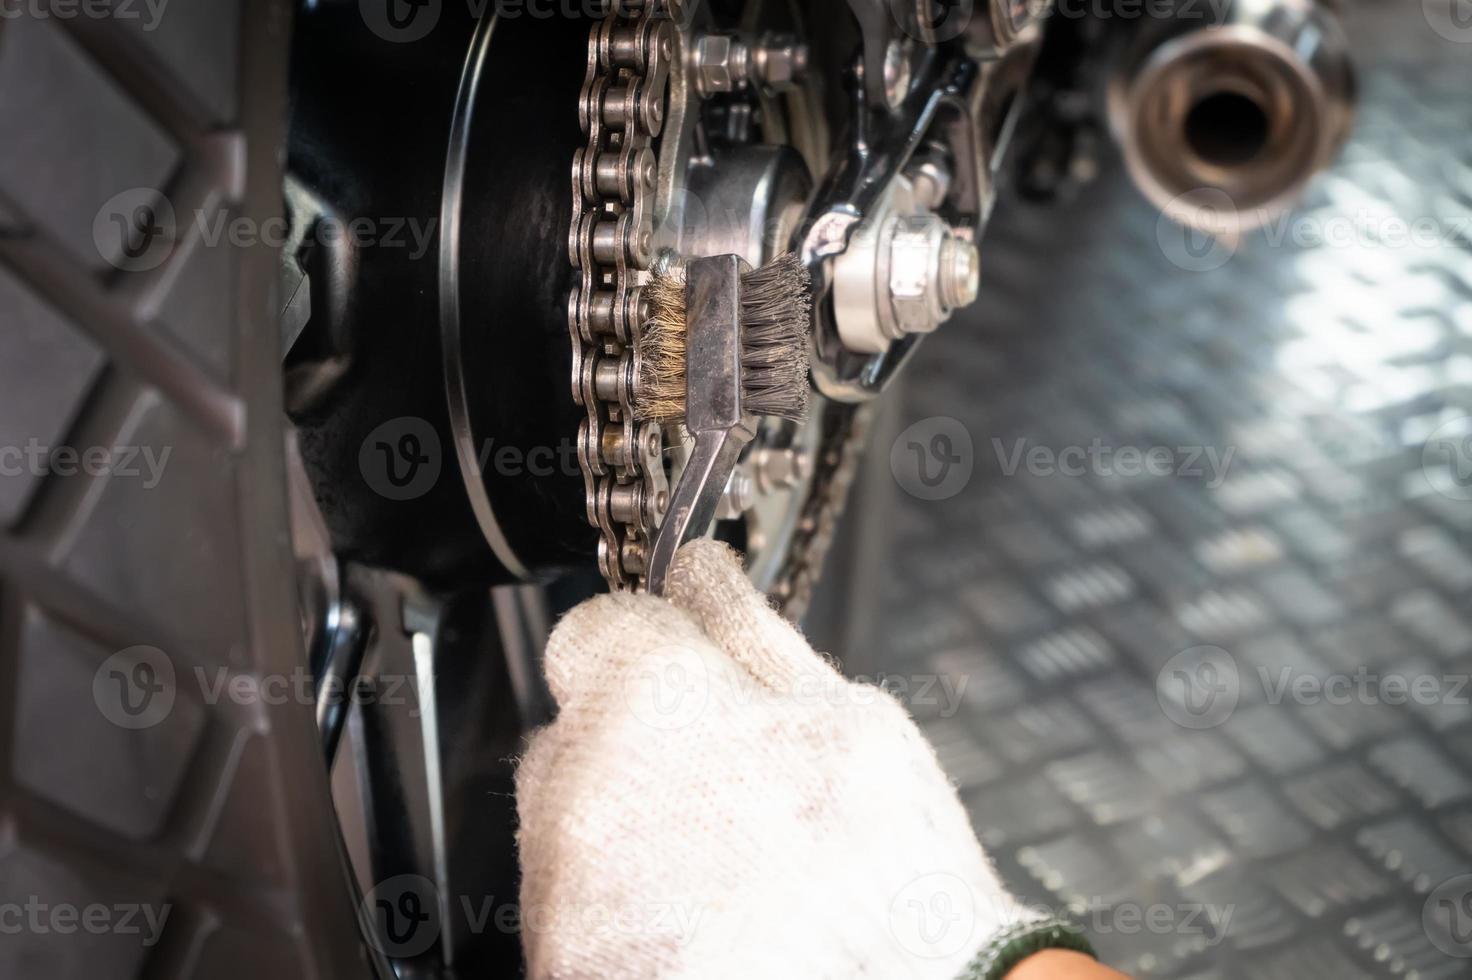 mecânico de motocicleta usando luvas usando escova de arame para limpar a roda dentada traseira da motocicleta na garagem de motos, conceito de manutenção e reparo da motocicleta, foto